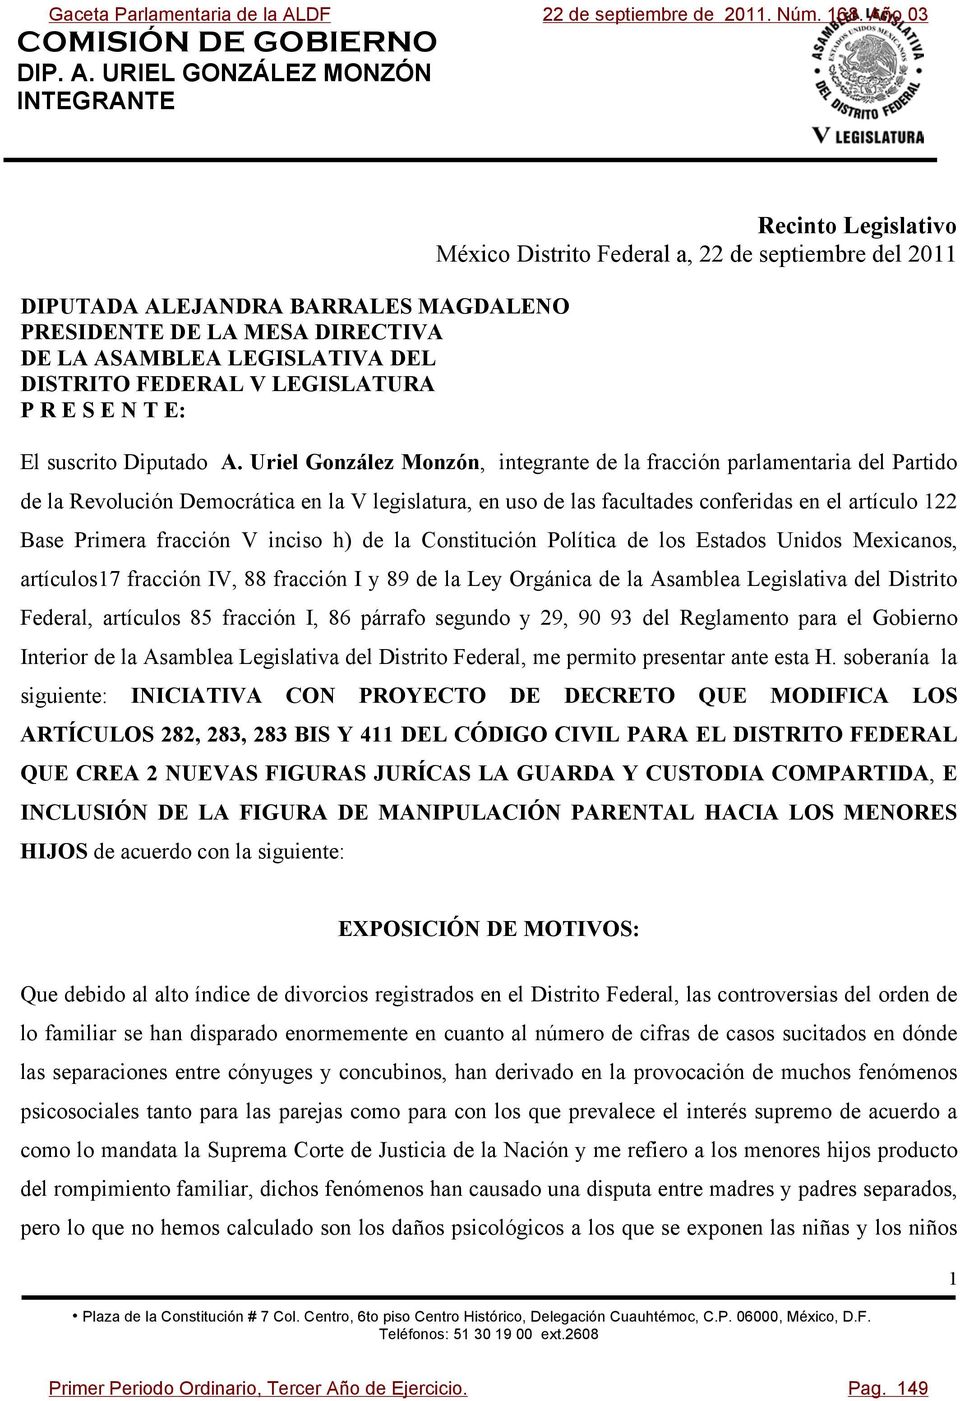 Uriel González Monzón, integrante de la fracción parlamentaria del Partido de la Revolución Democrática en la V legislatura, en uso de las facultades conferidas en el artículo 122 Base Primera